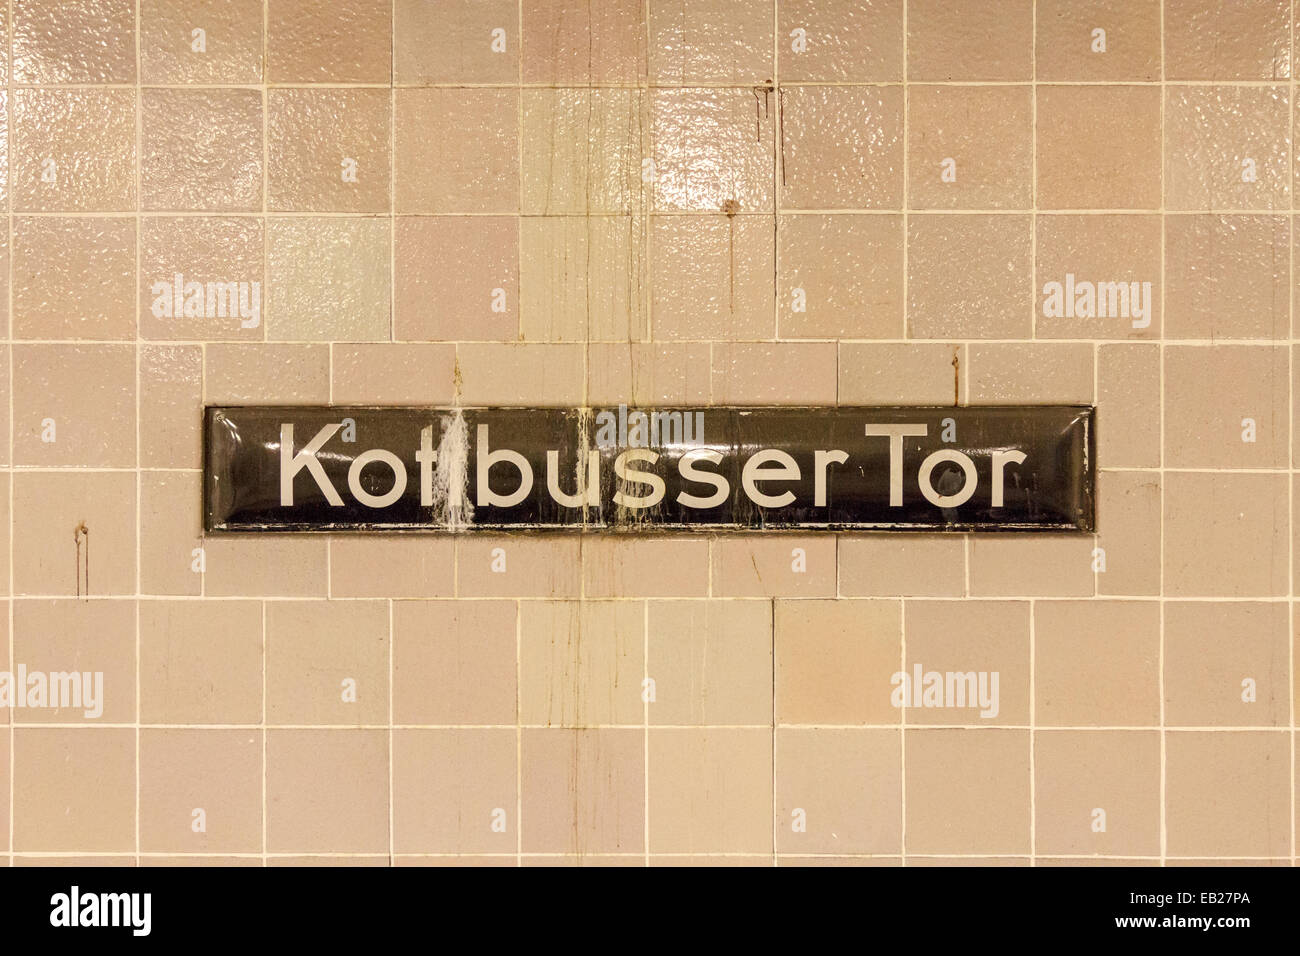 Subway station sign at Kottbusser Tor in Kreuzberg, Berlin, Germany. Stock Photo